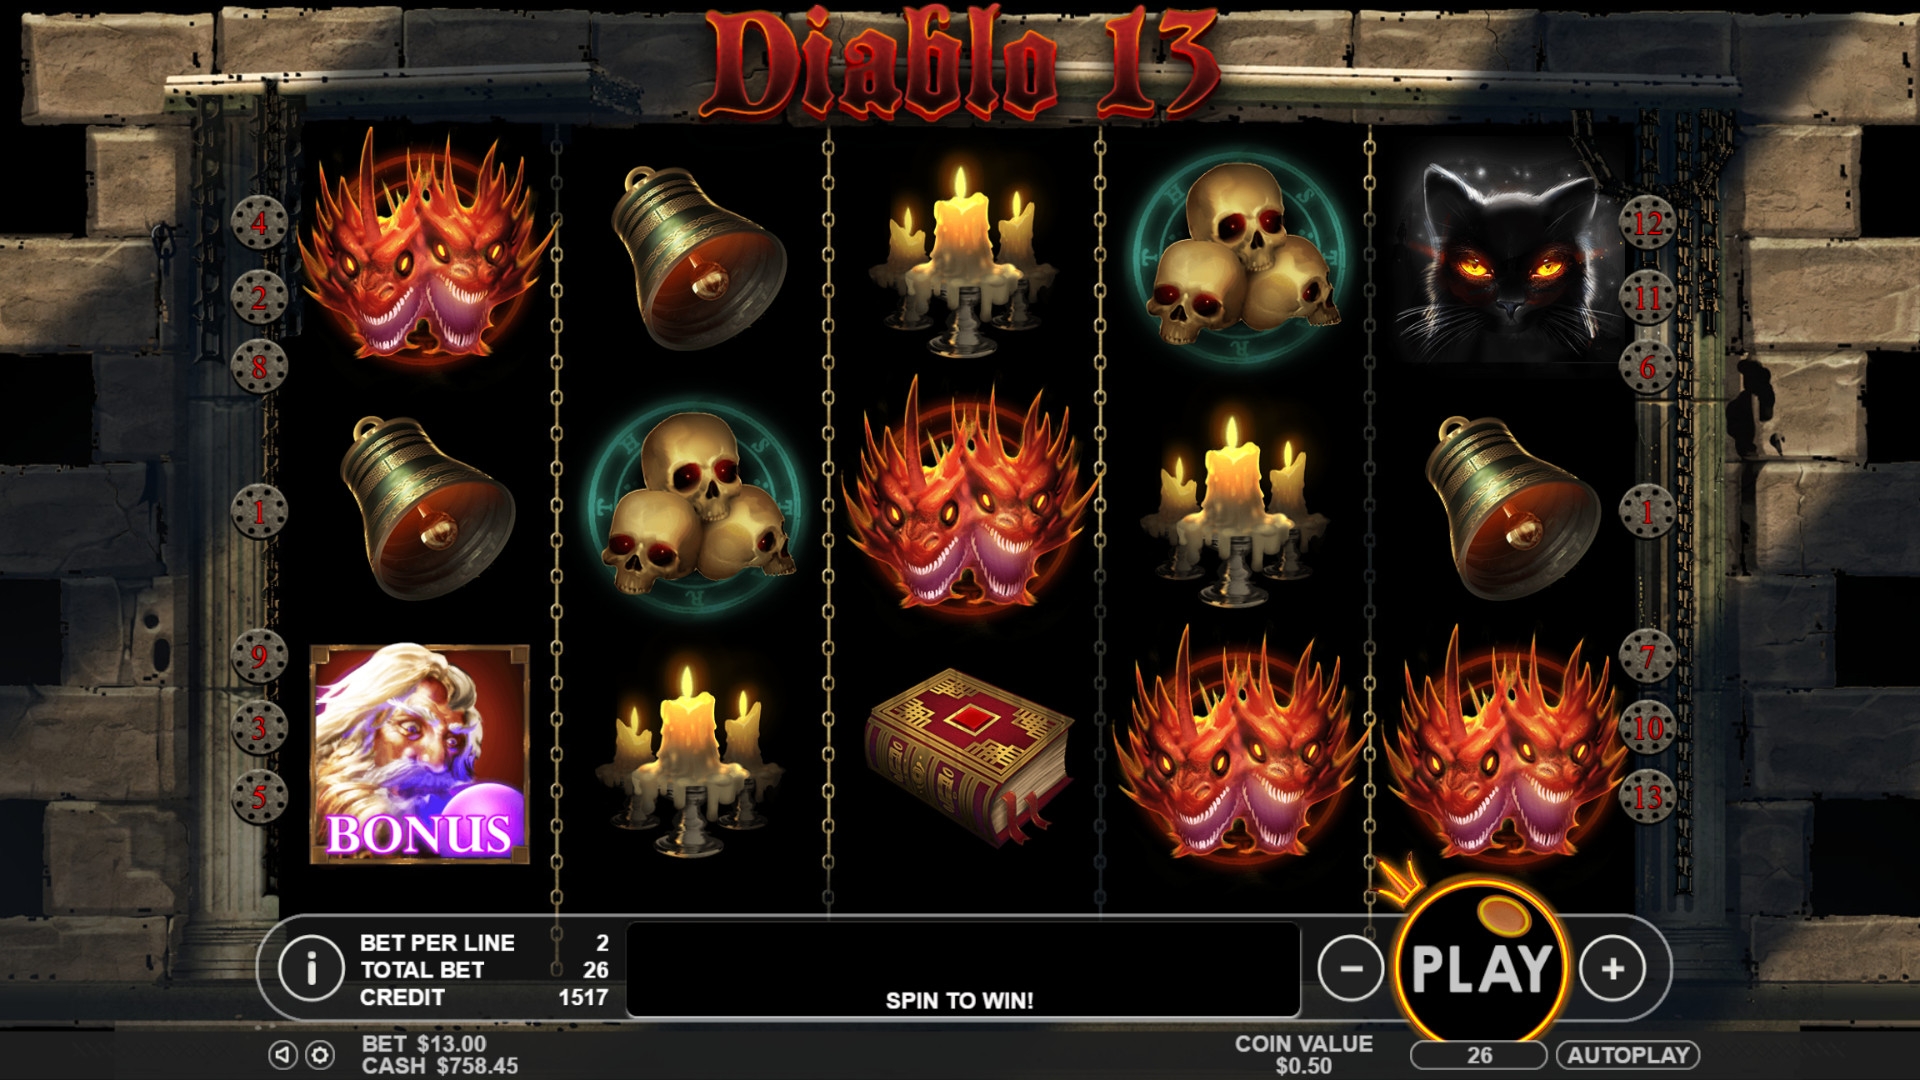 Diablo 13 (Diablo 13) from category Slots